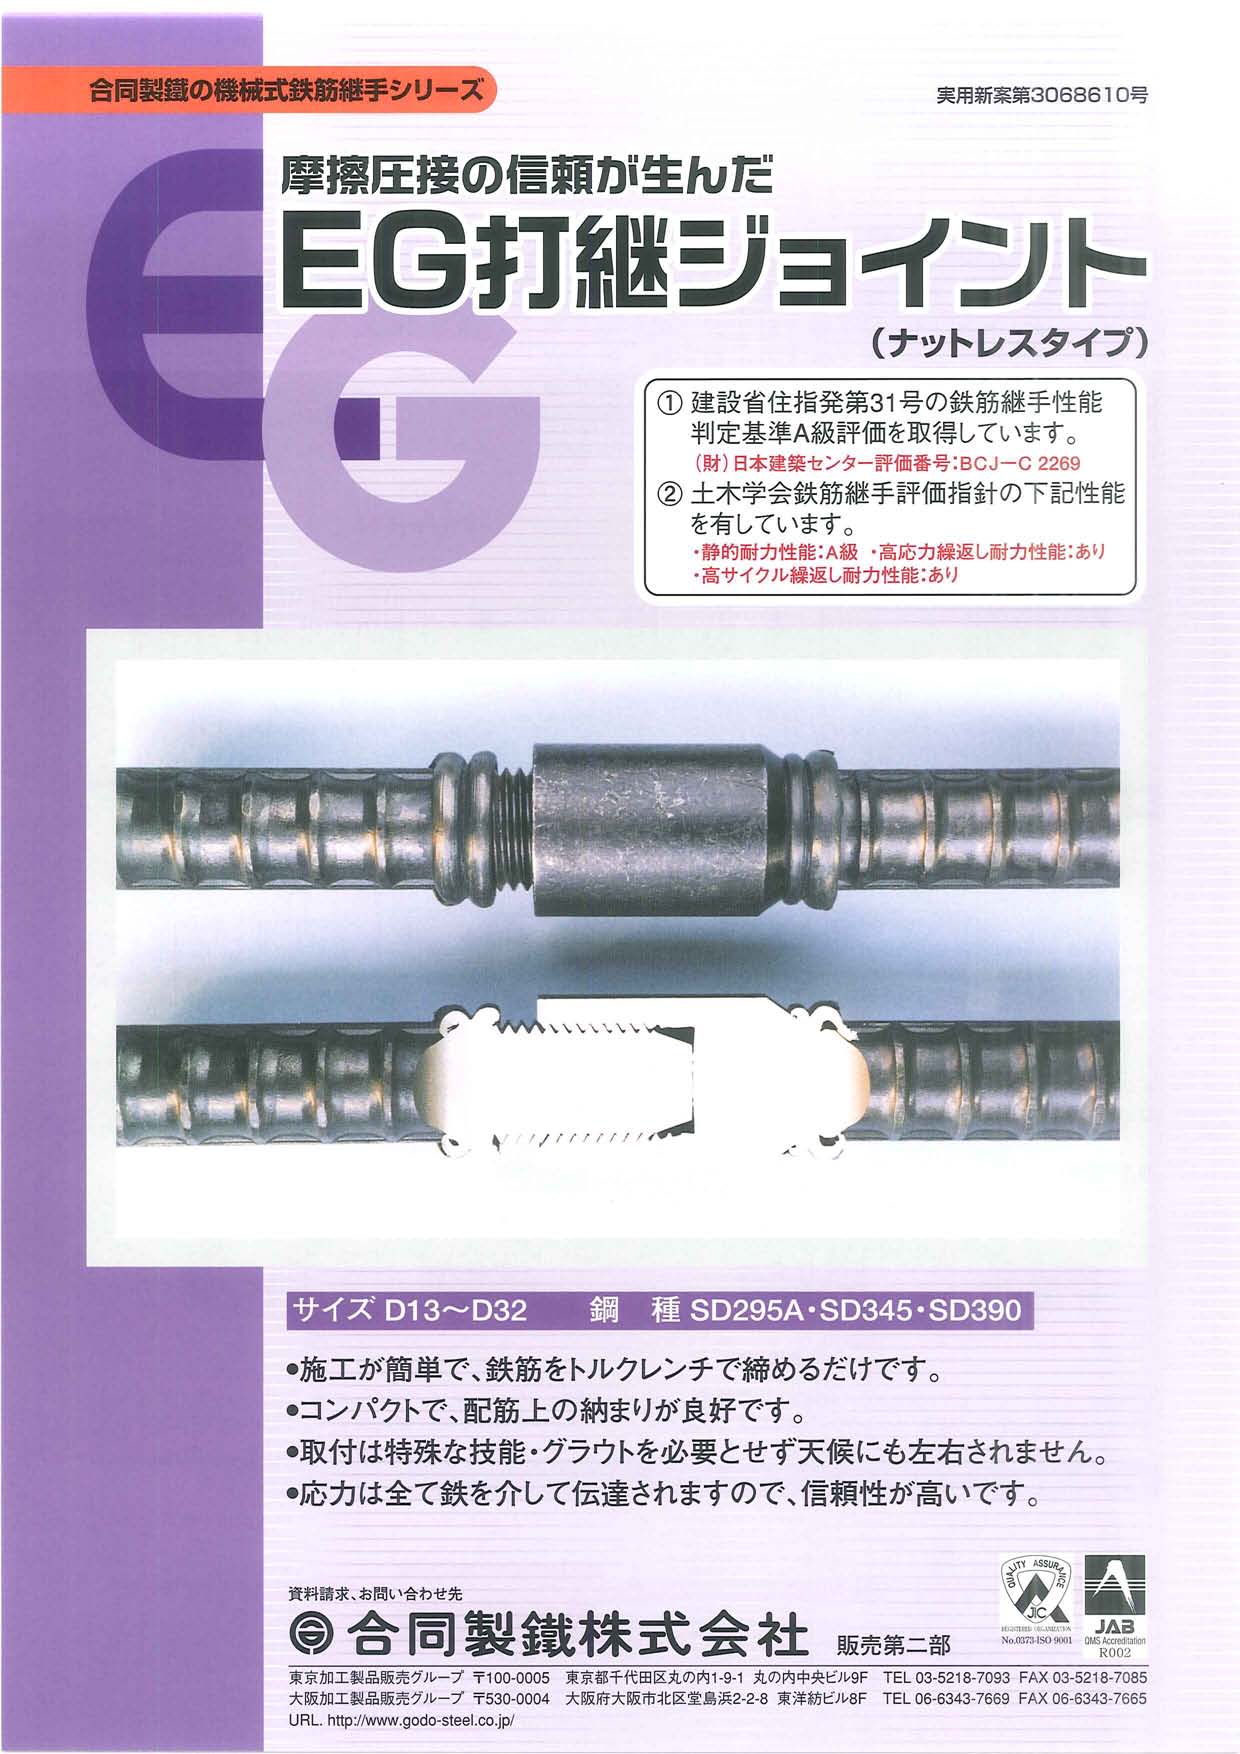 ジャパンライフ FCI-Aインサート M20A*100(20本入) 6367569C01